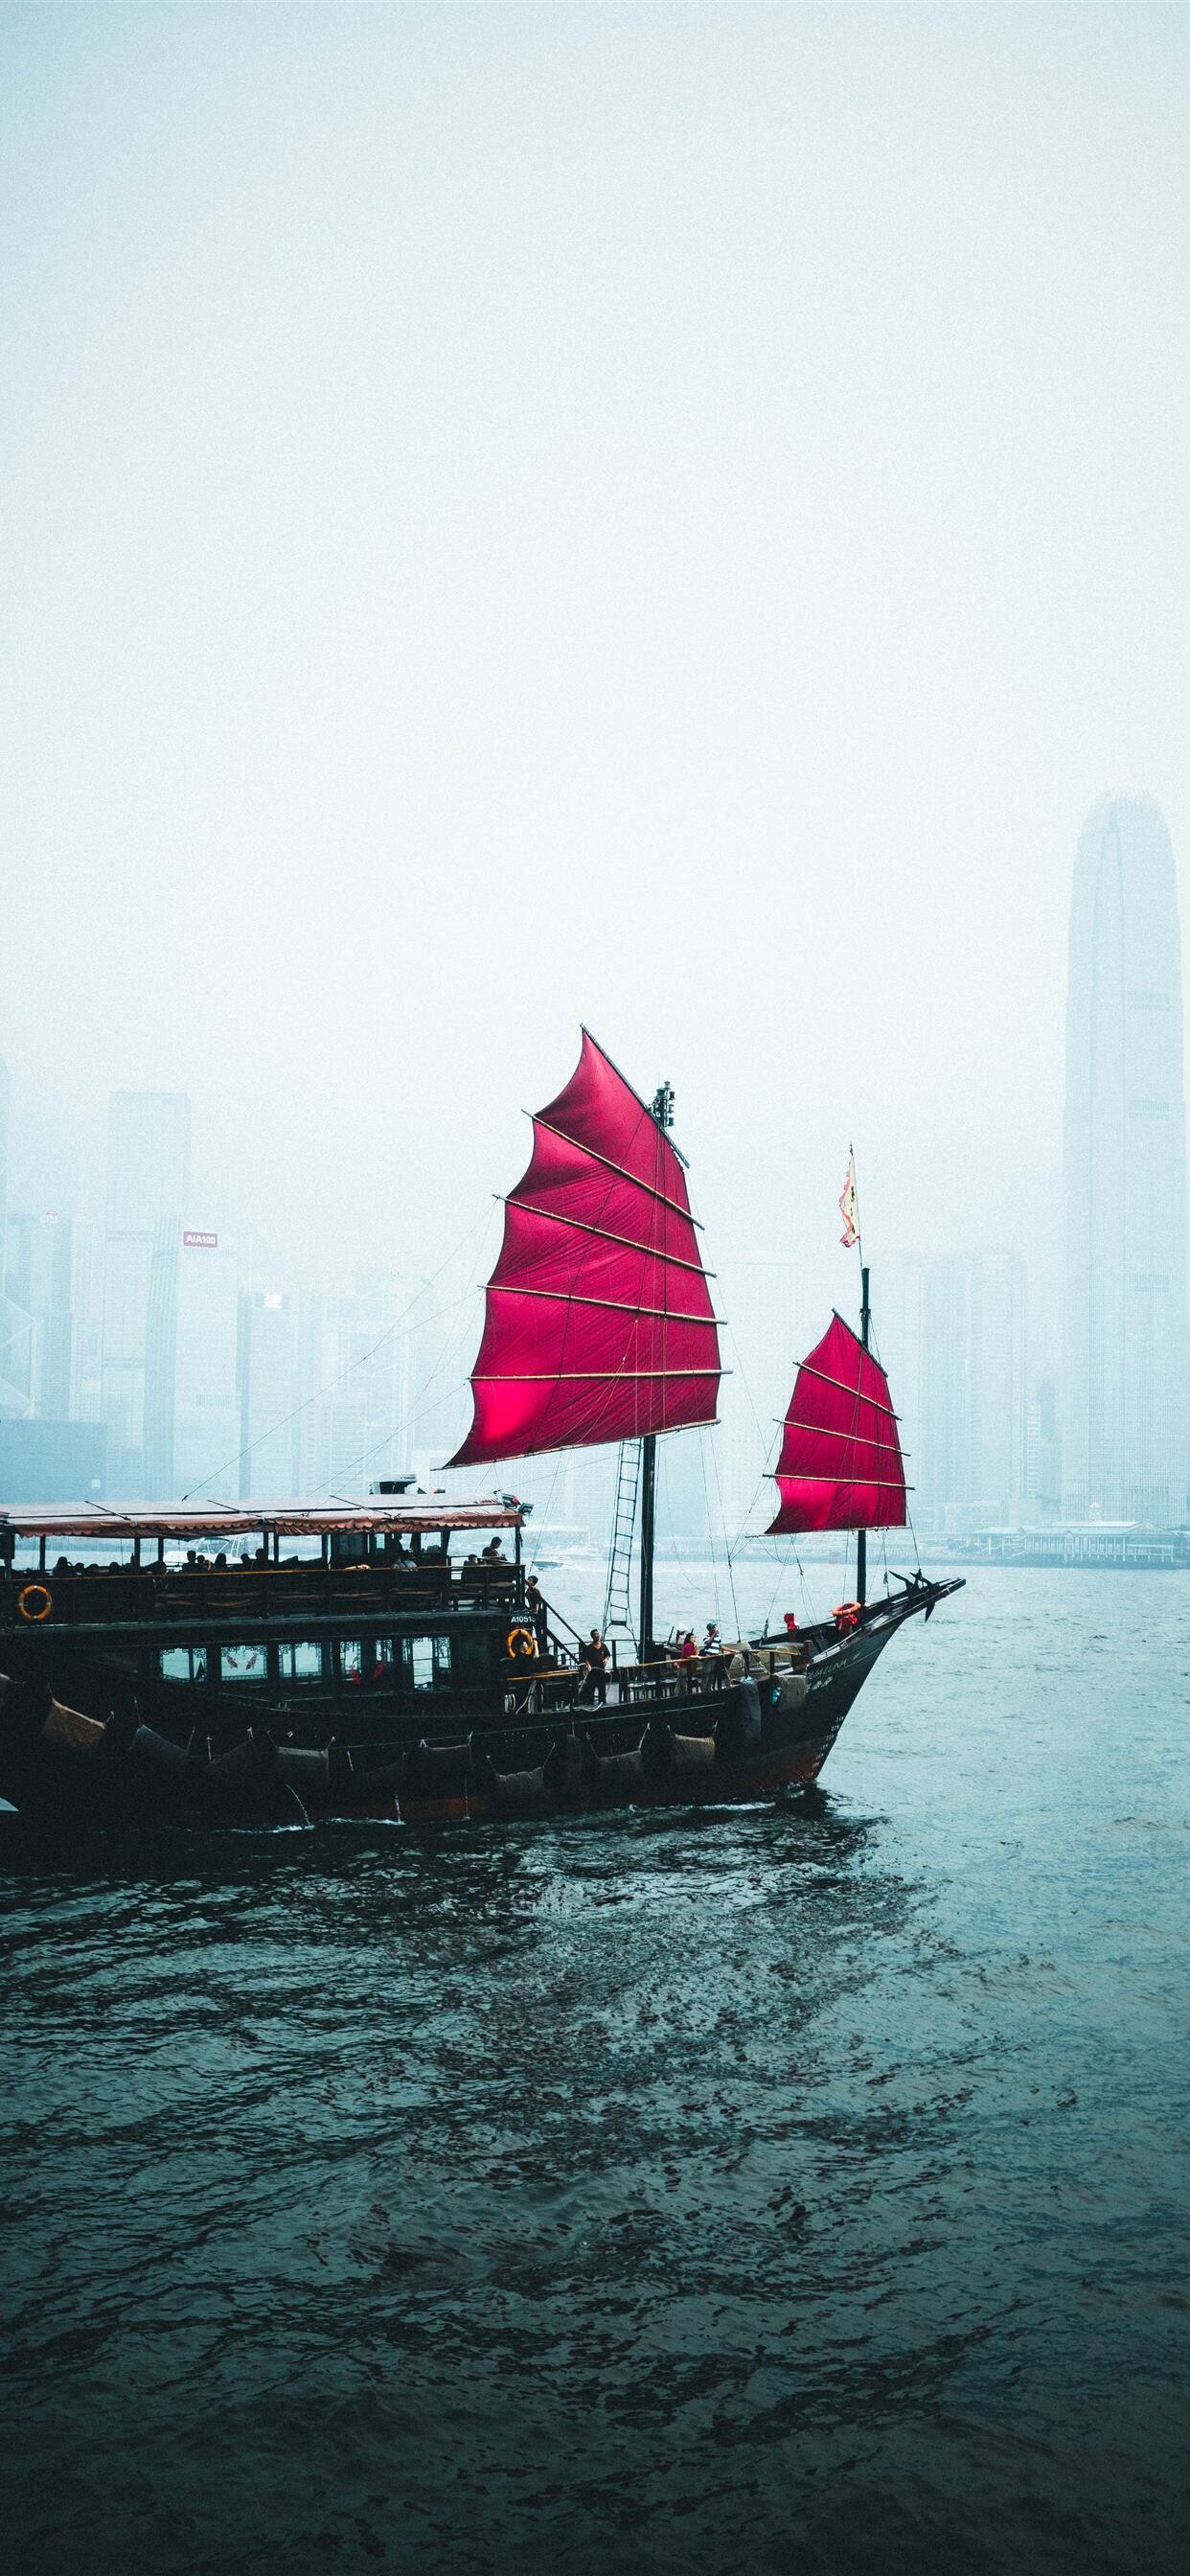 Hong Kong: Junk boat, Downtown, Watercourse, China. 1250x2690 HD Wallpaper.